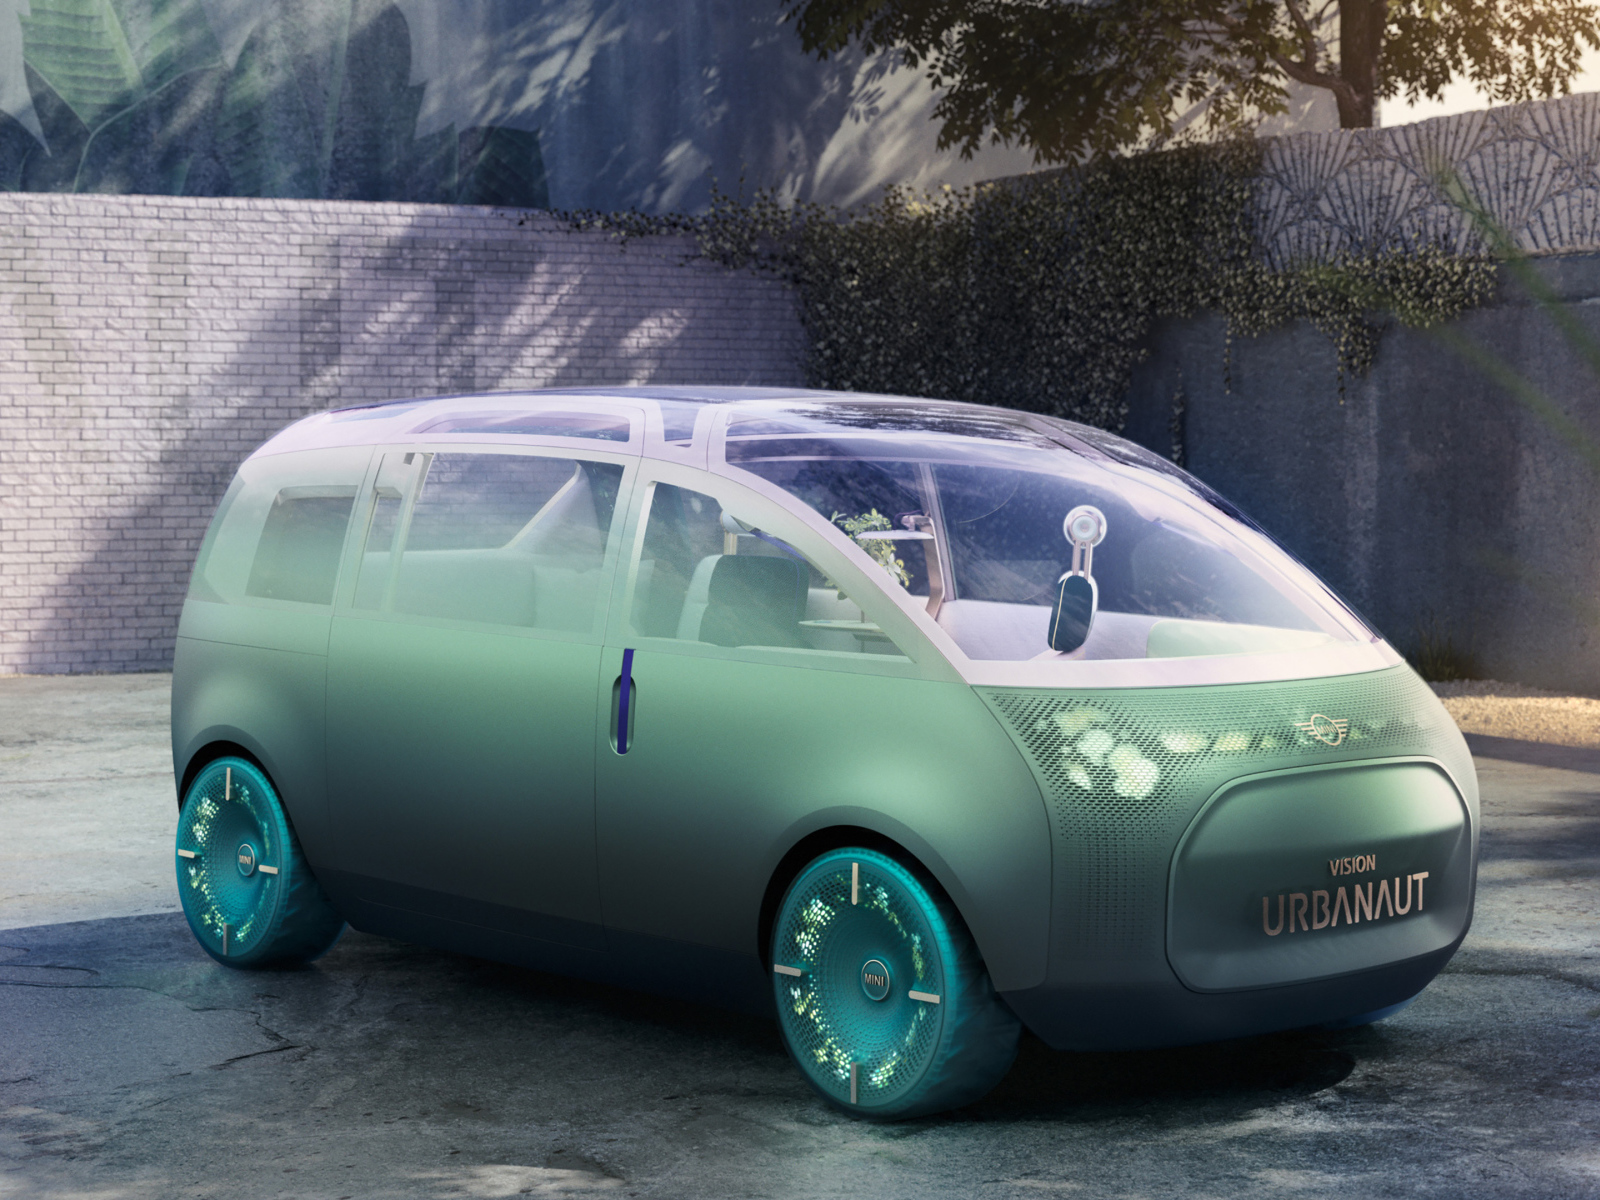 2020 MINI Vision Urbanaut futuristic car